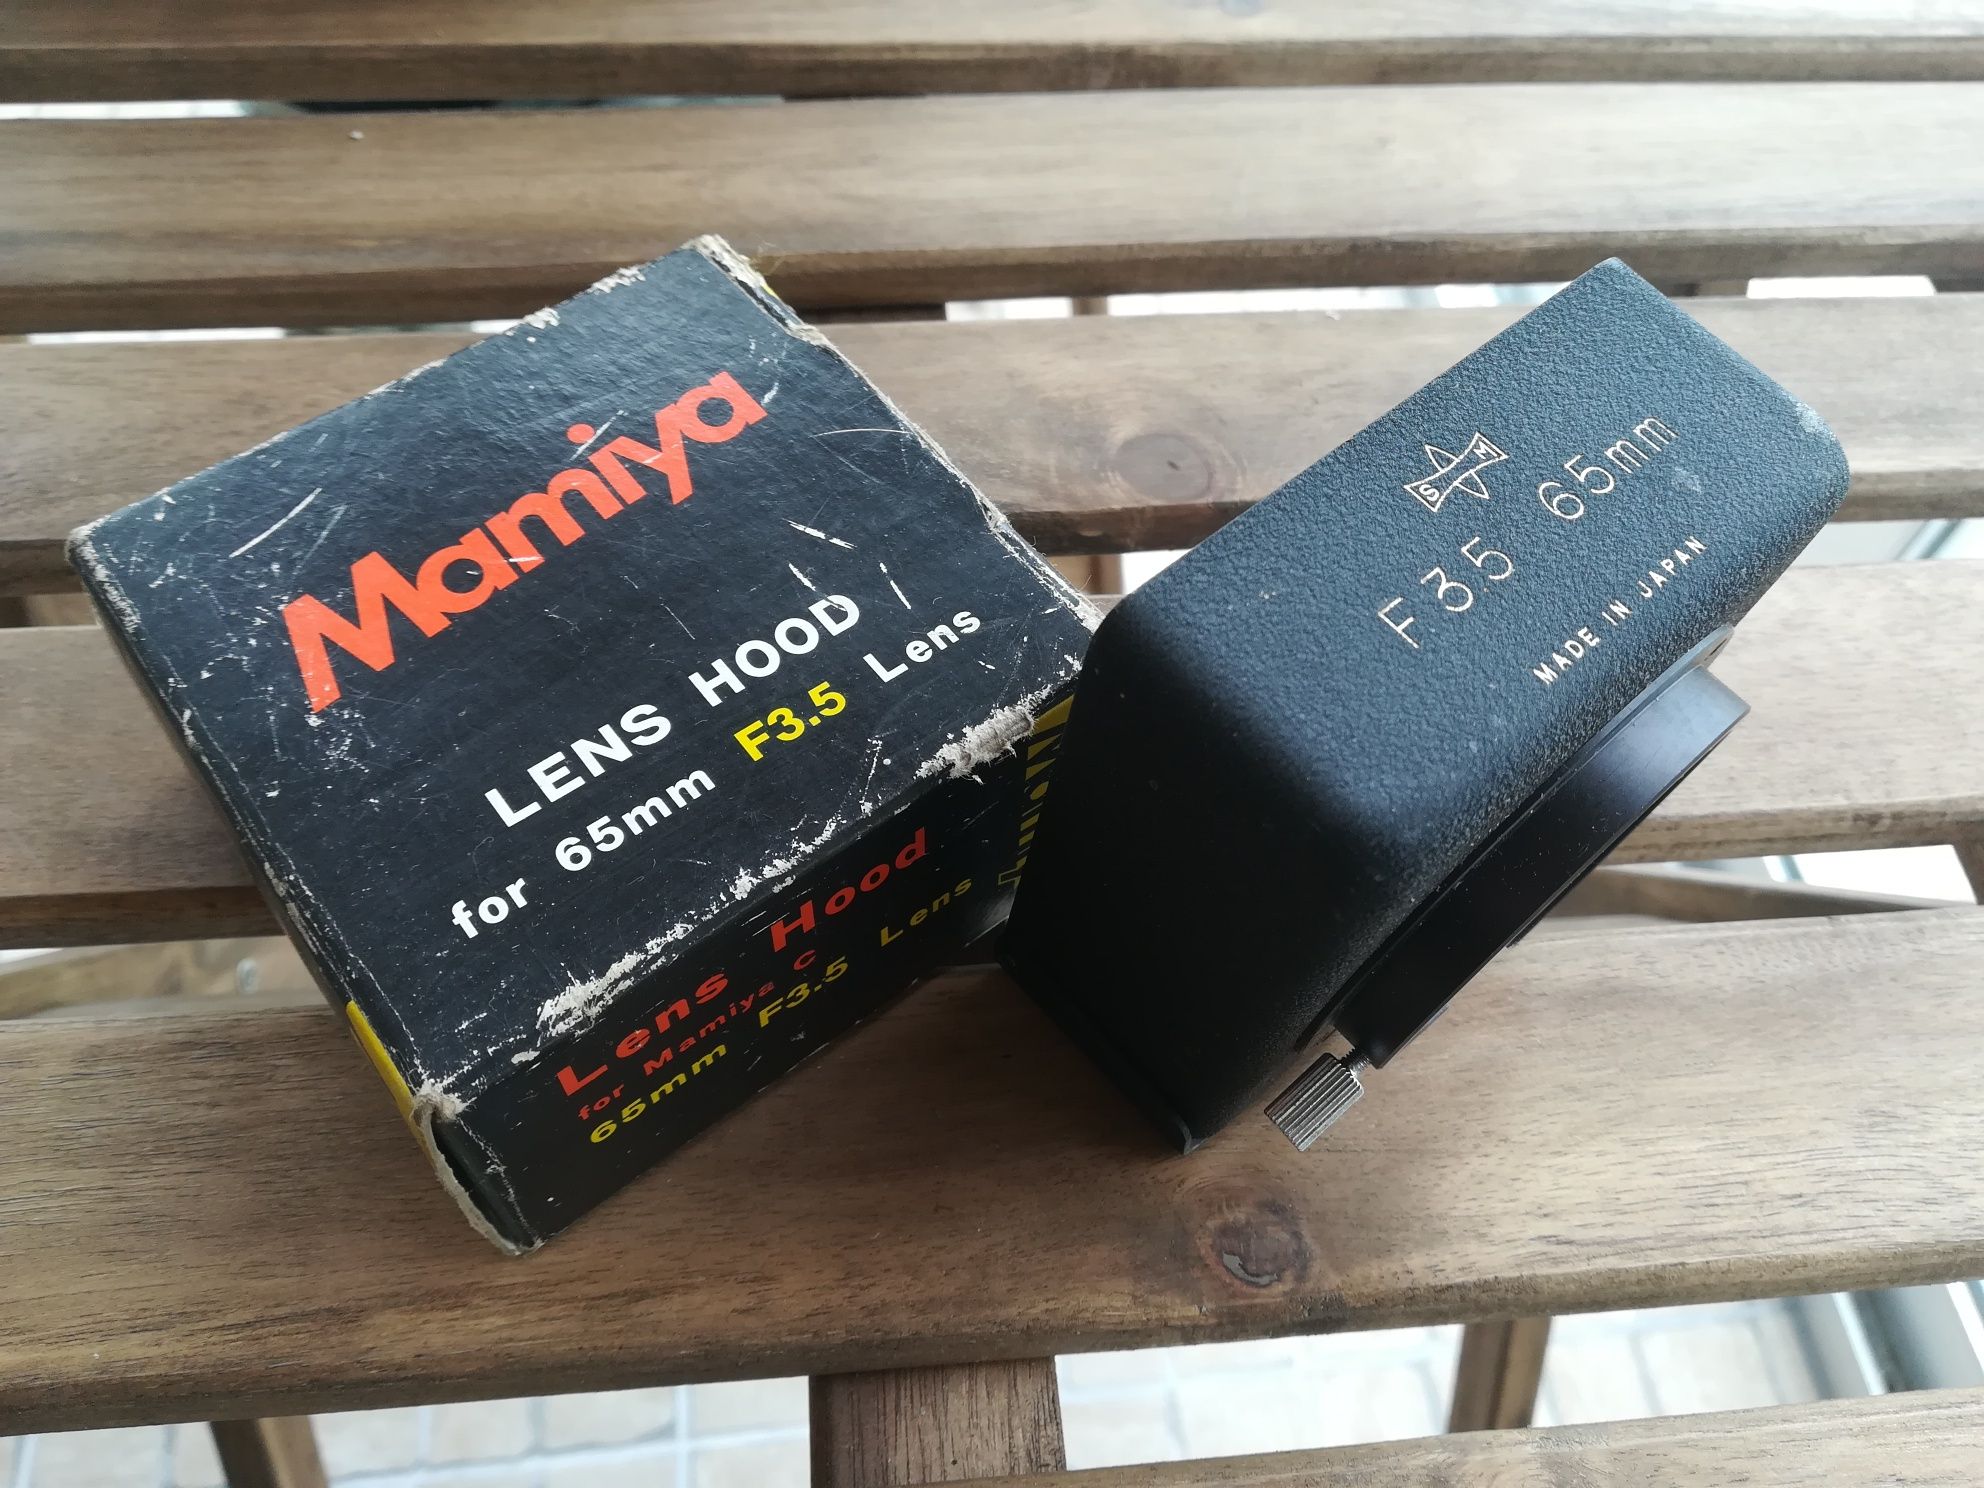 Secor Lens for Mamiya C - 65mm F 3.5 + lens Hood - NOVO